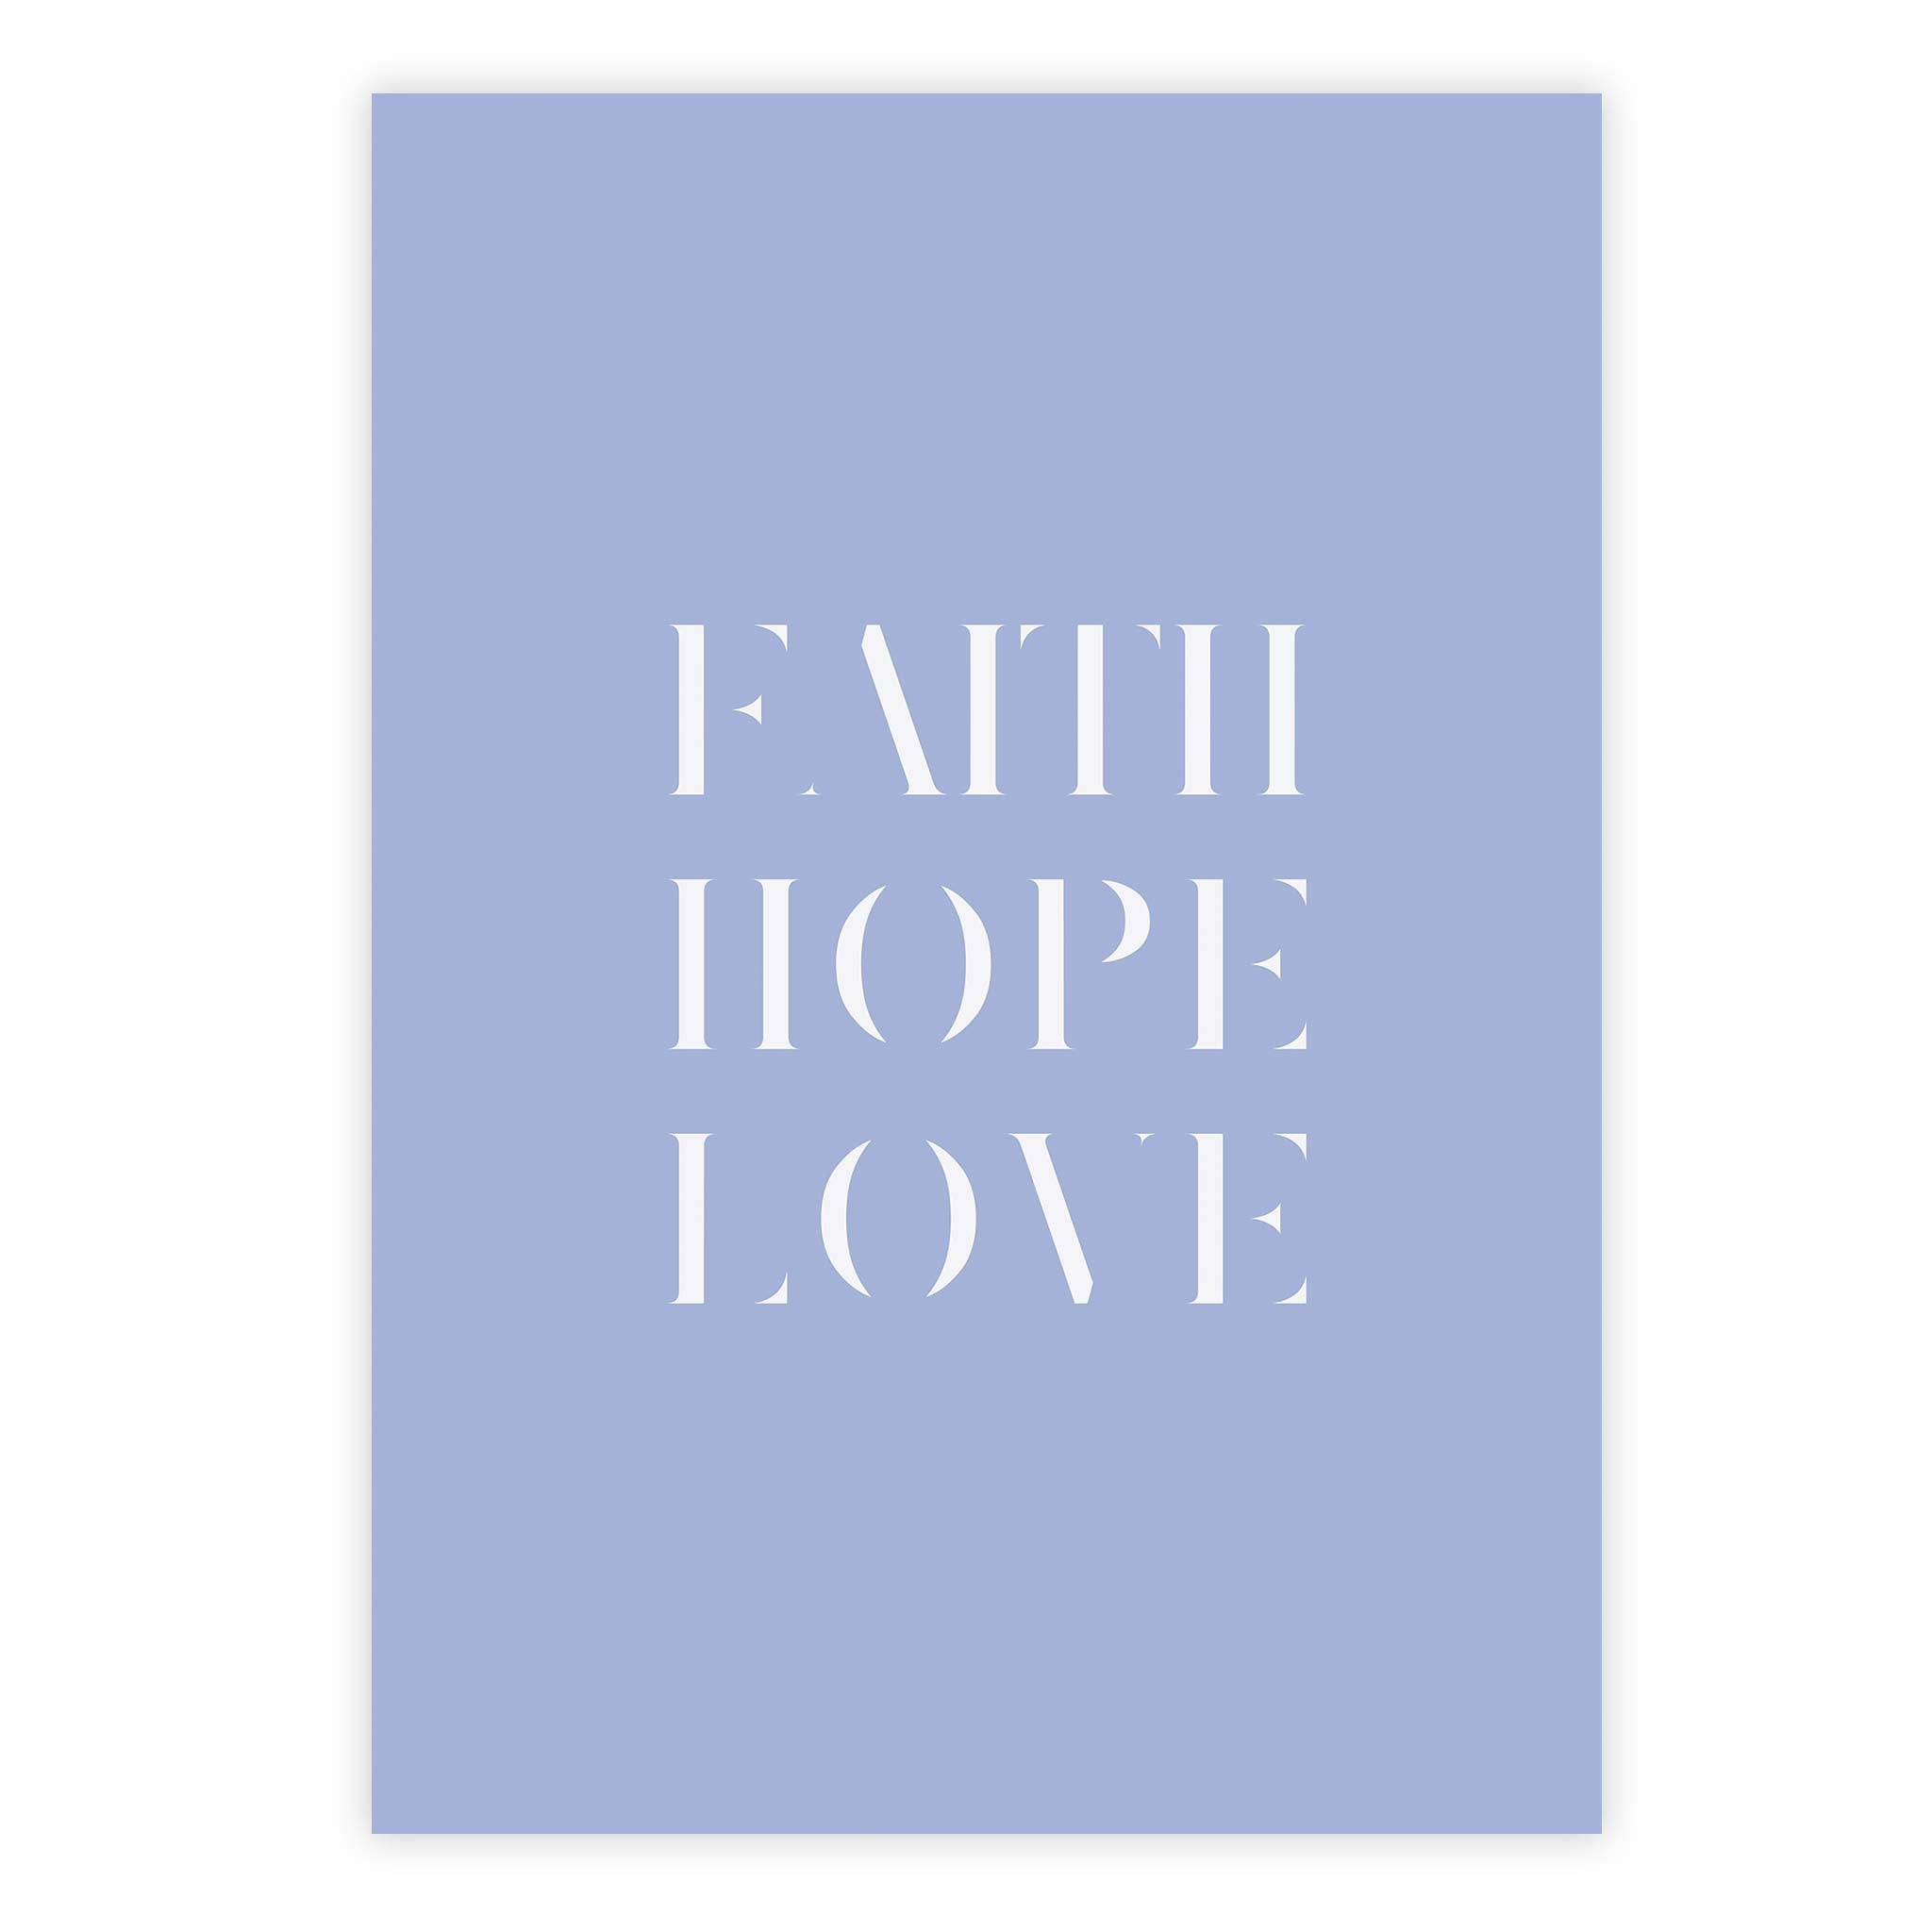 Faith hope love